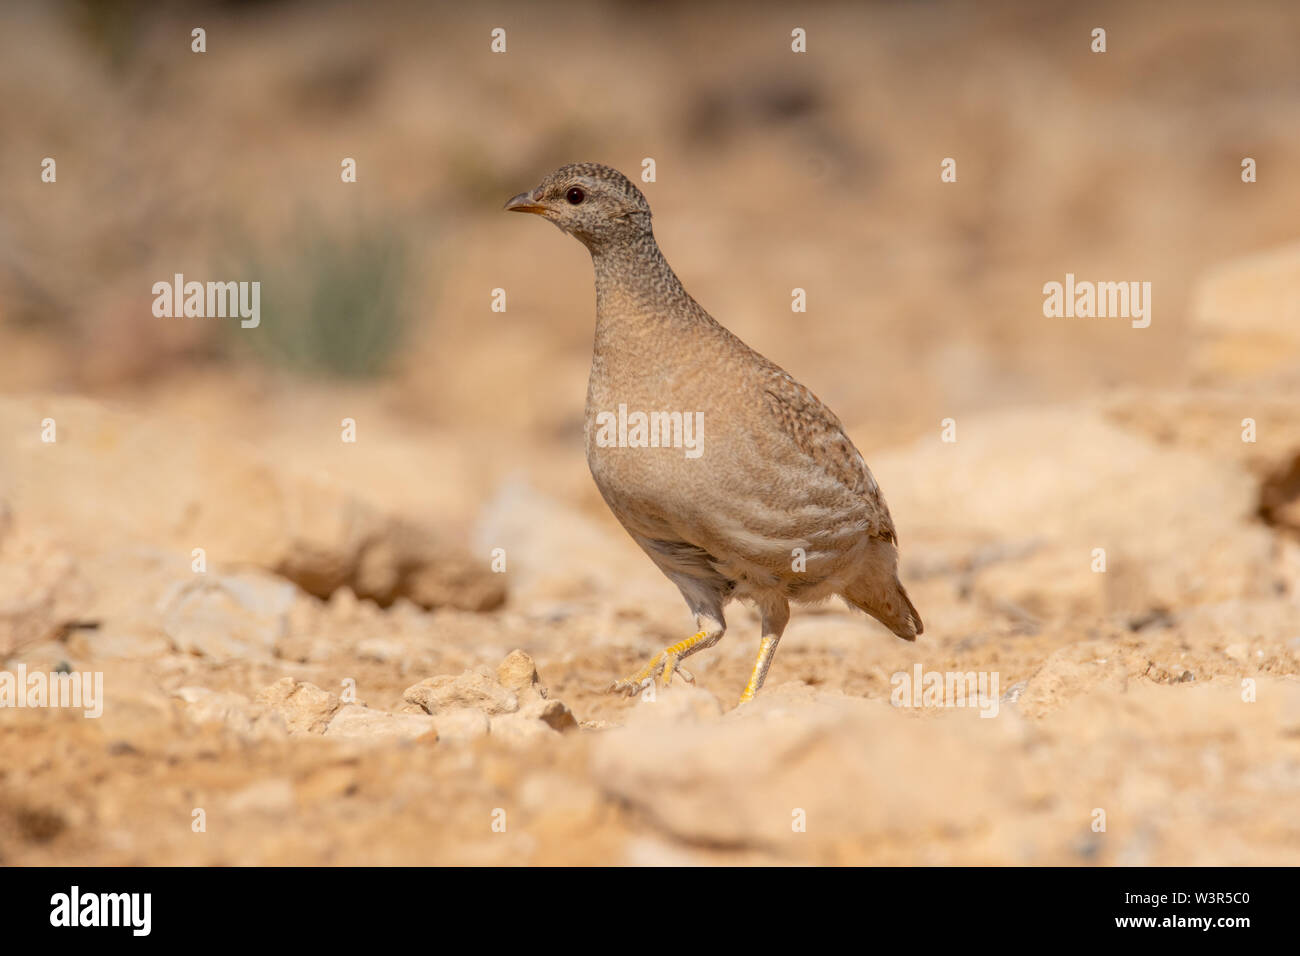 La pernice di sabbia (Ammoperdix heyi) è un gamebird nella famiglia di fagiano Phasianidae dell'ordine galliformi, uccelli gallinacei. Fotografato in Israele Foto Stock